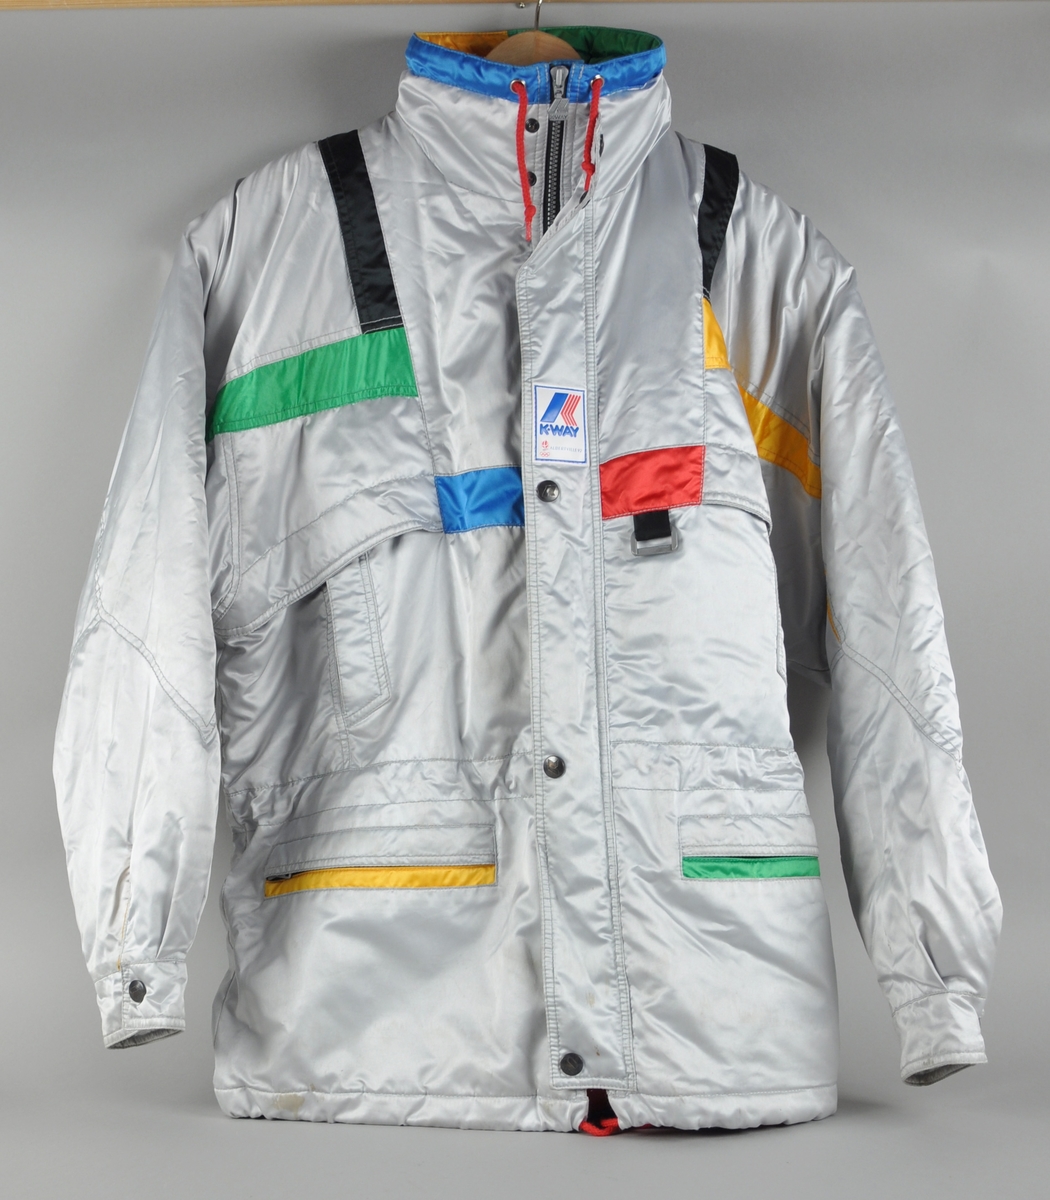 Grå jakke med dekor i ulike farger blant annet ved lommer og krage. Påsydd merker med logo for K-WAY og emblemet for de olympiske vinterleker i Albertville i 1992.